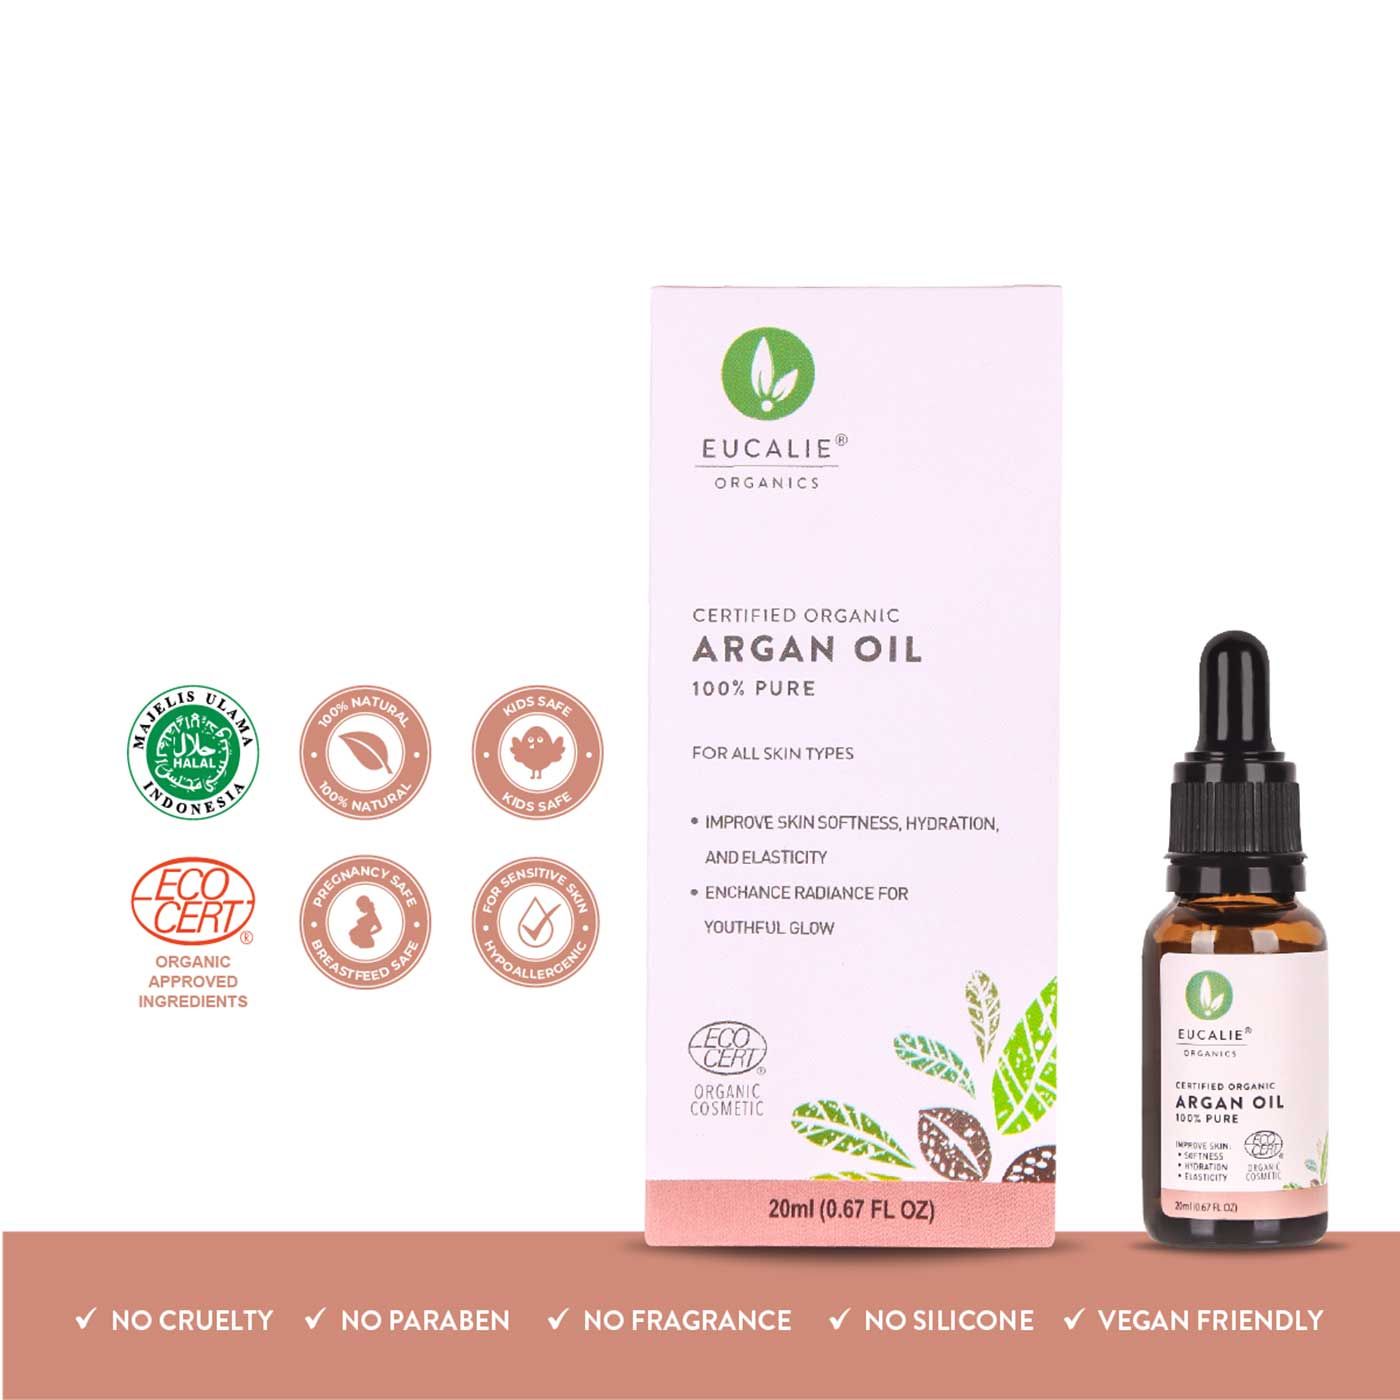 Eucalie Organic Argan Oil [ECOCERT Certified] - 1